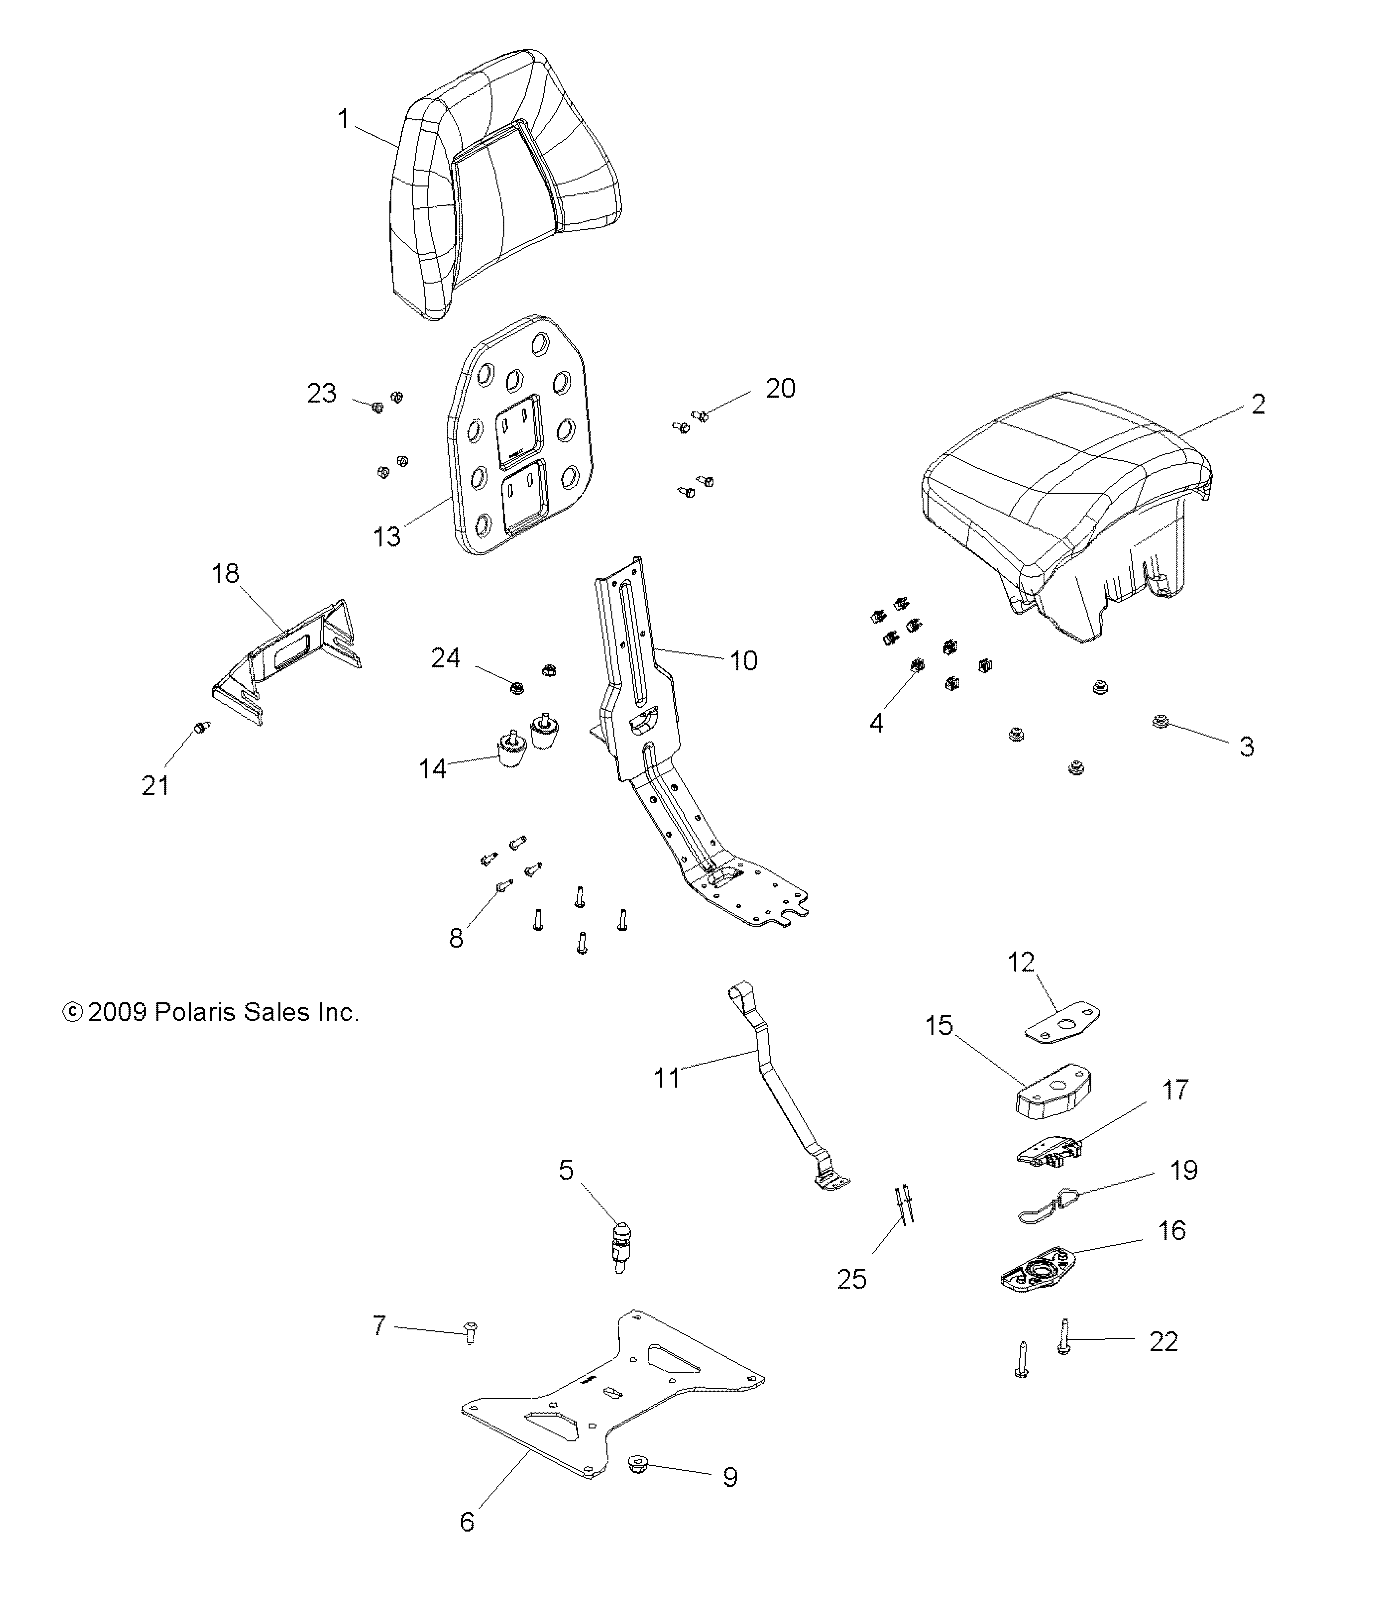 Foto diagrama Polaris que contem a peça 2684918-070